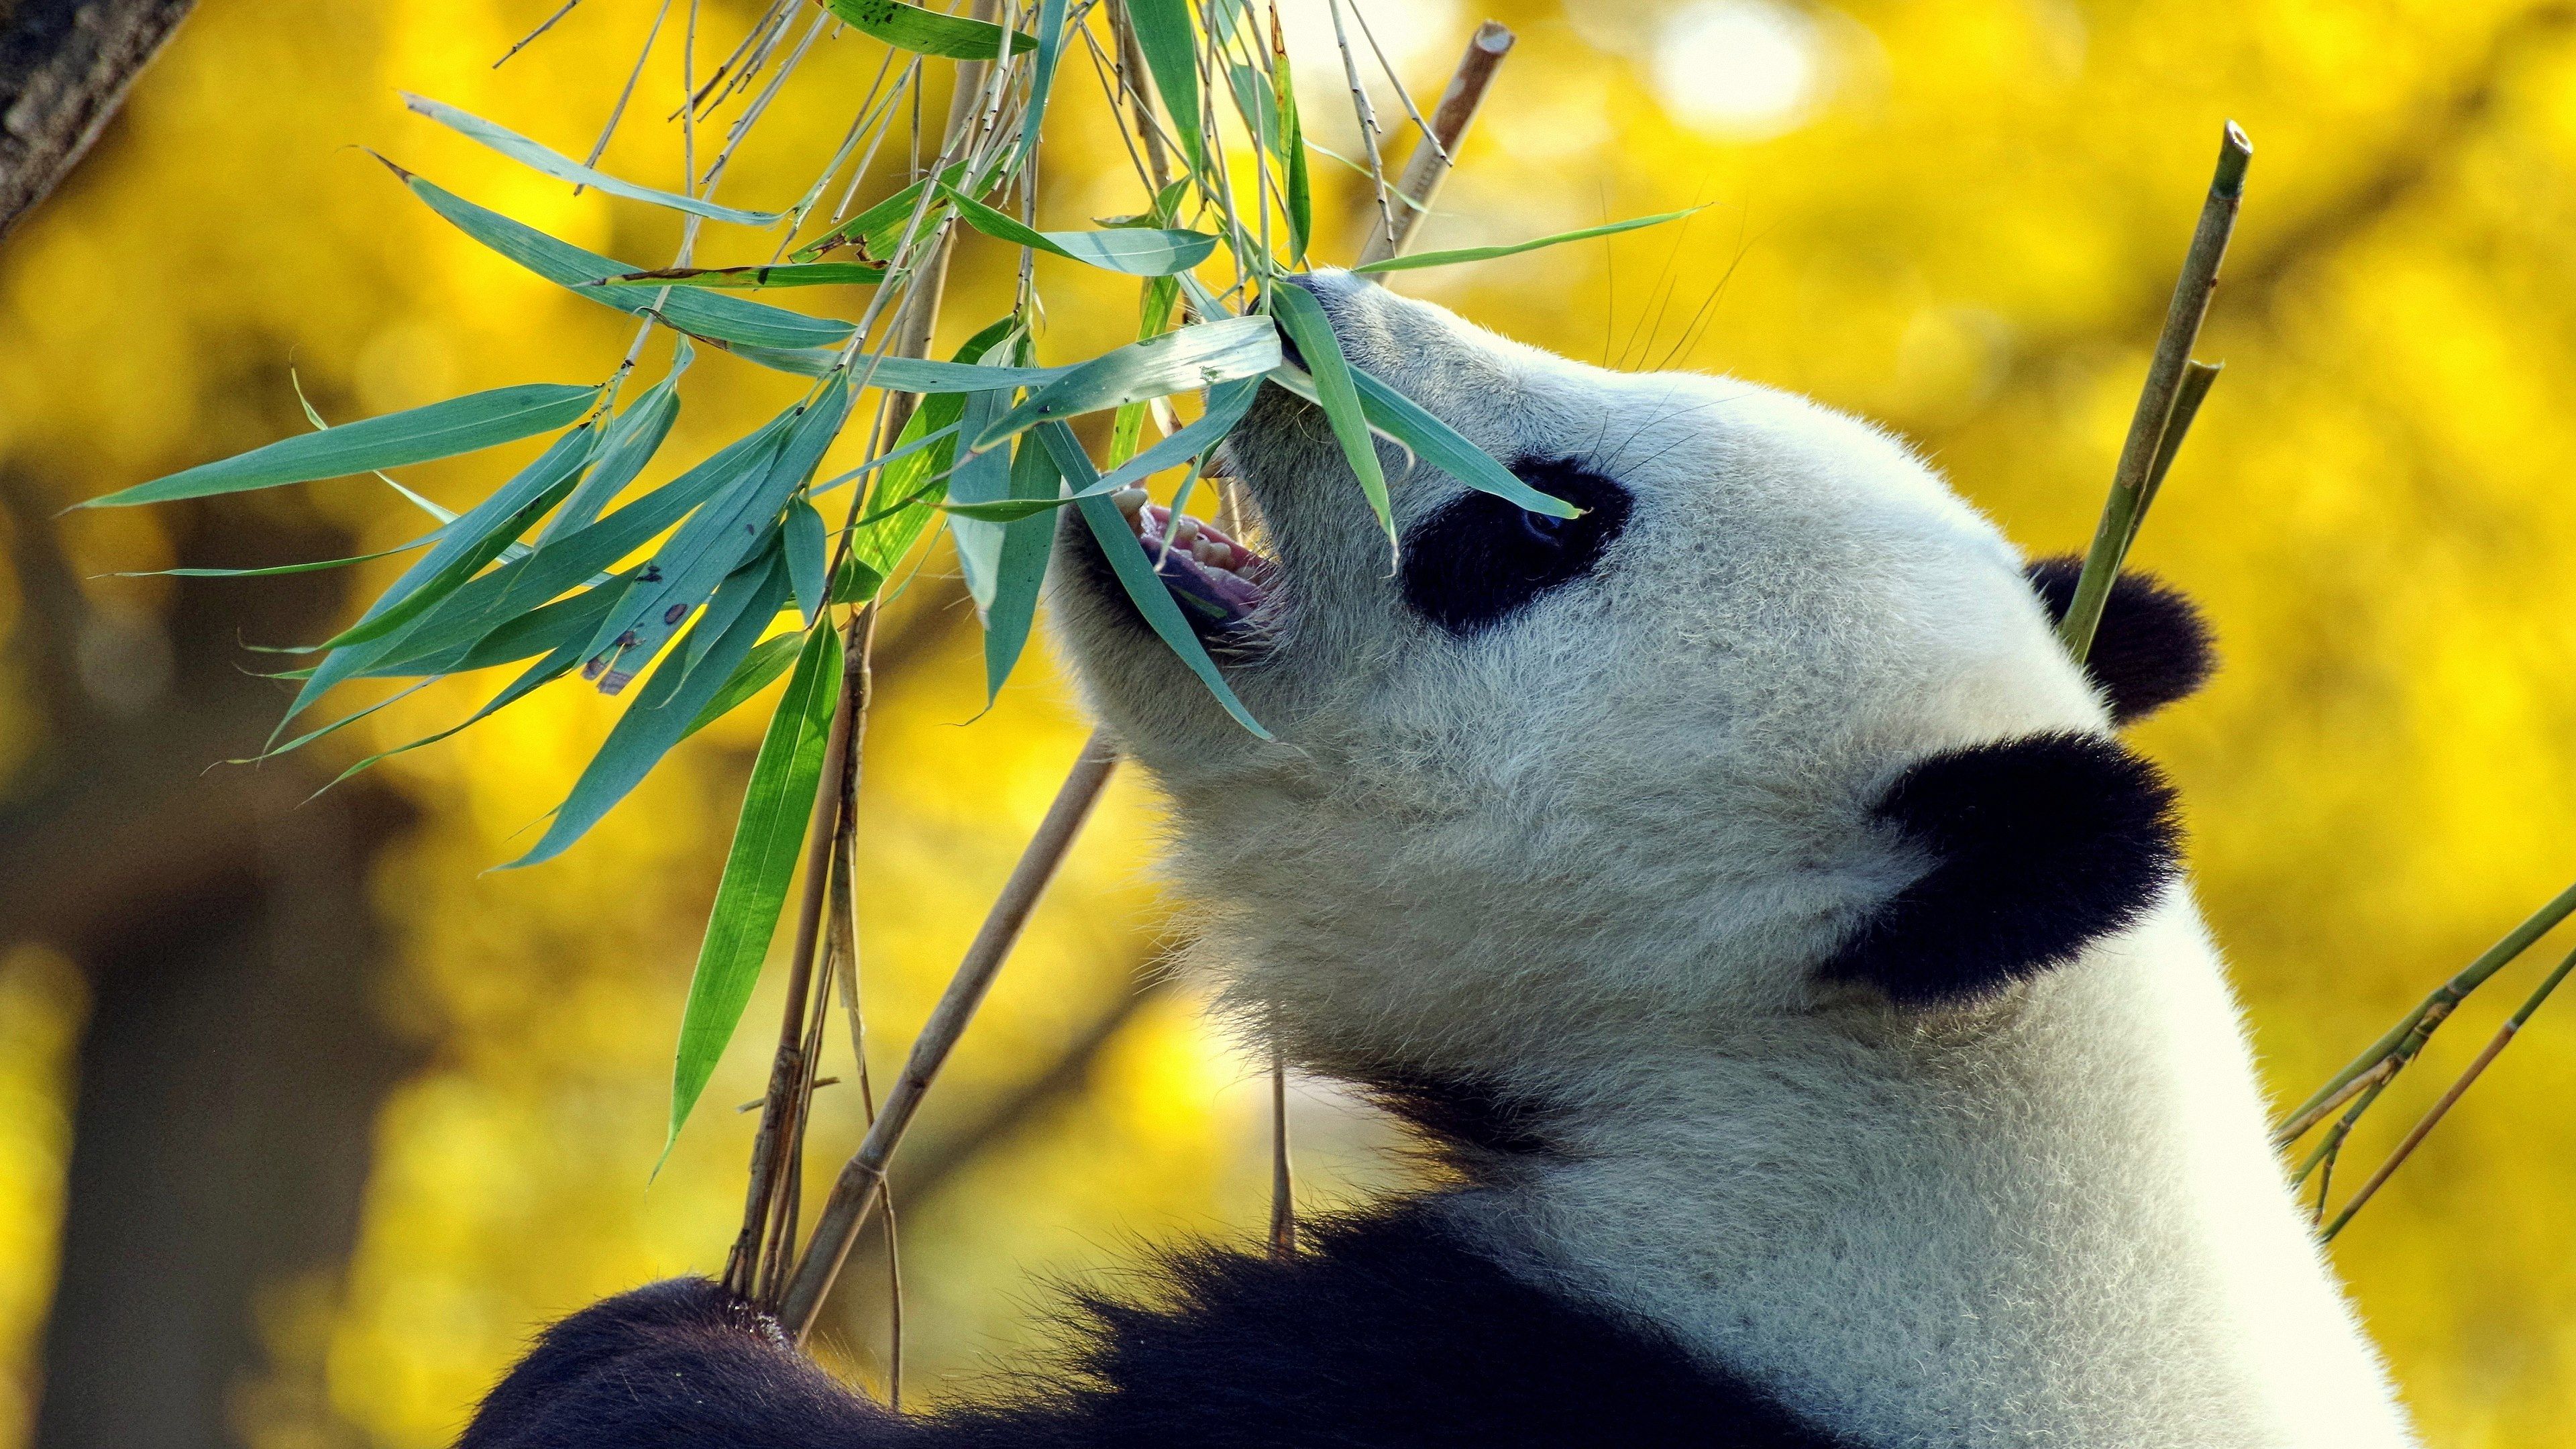  Tiere Hintergrundbild 3840x2160. Hintergrundbilder Tiere 4k Weiße Pandabären